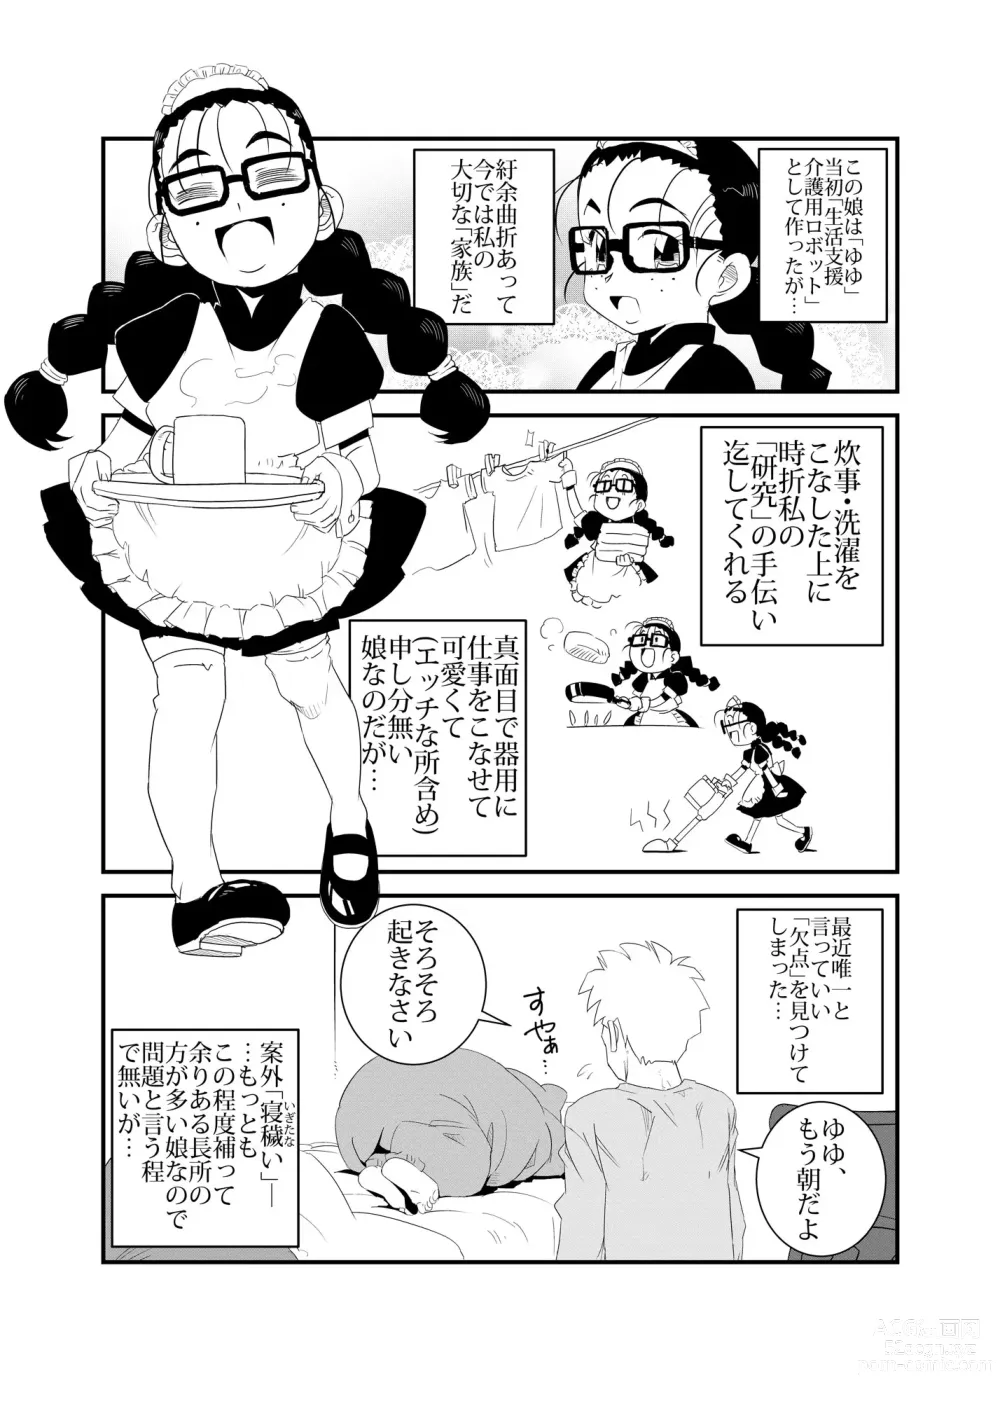 Page 4 of doujinshi Hamusumaid -Mandroid EP02-